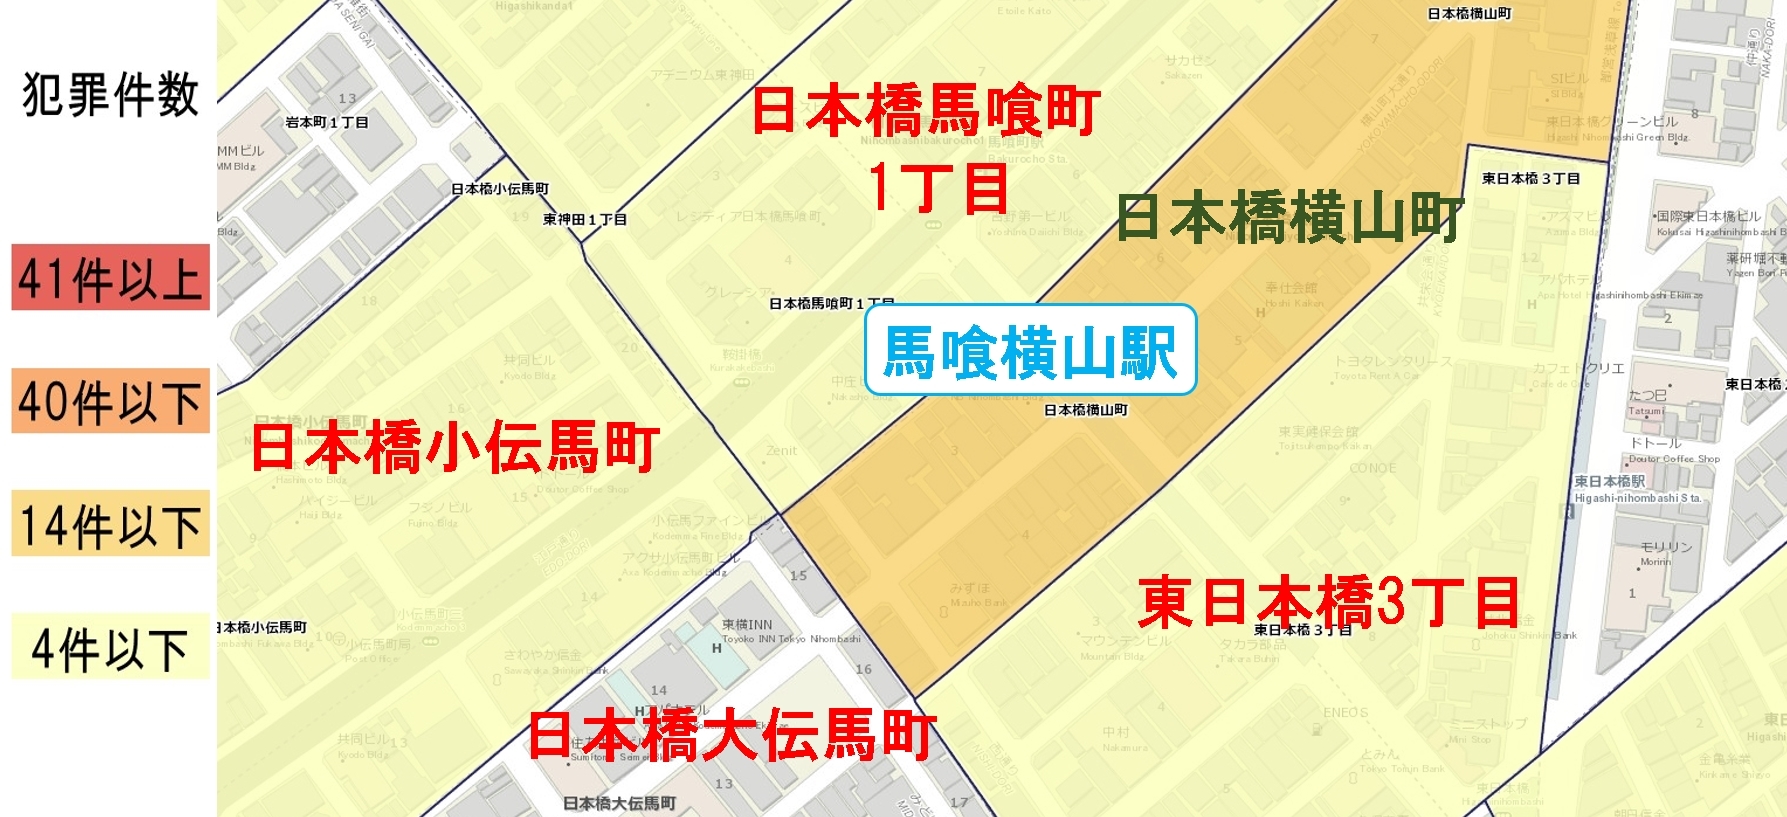 馬喰横山駅周辺の粗暴犯の犯罪件数マップ